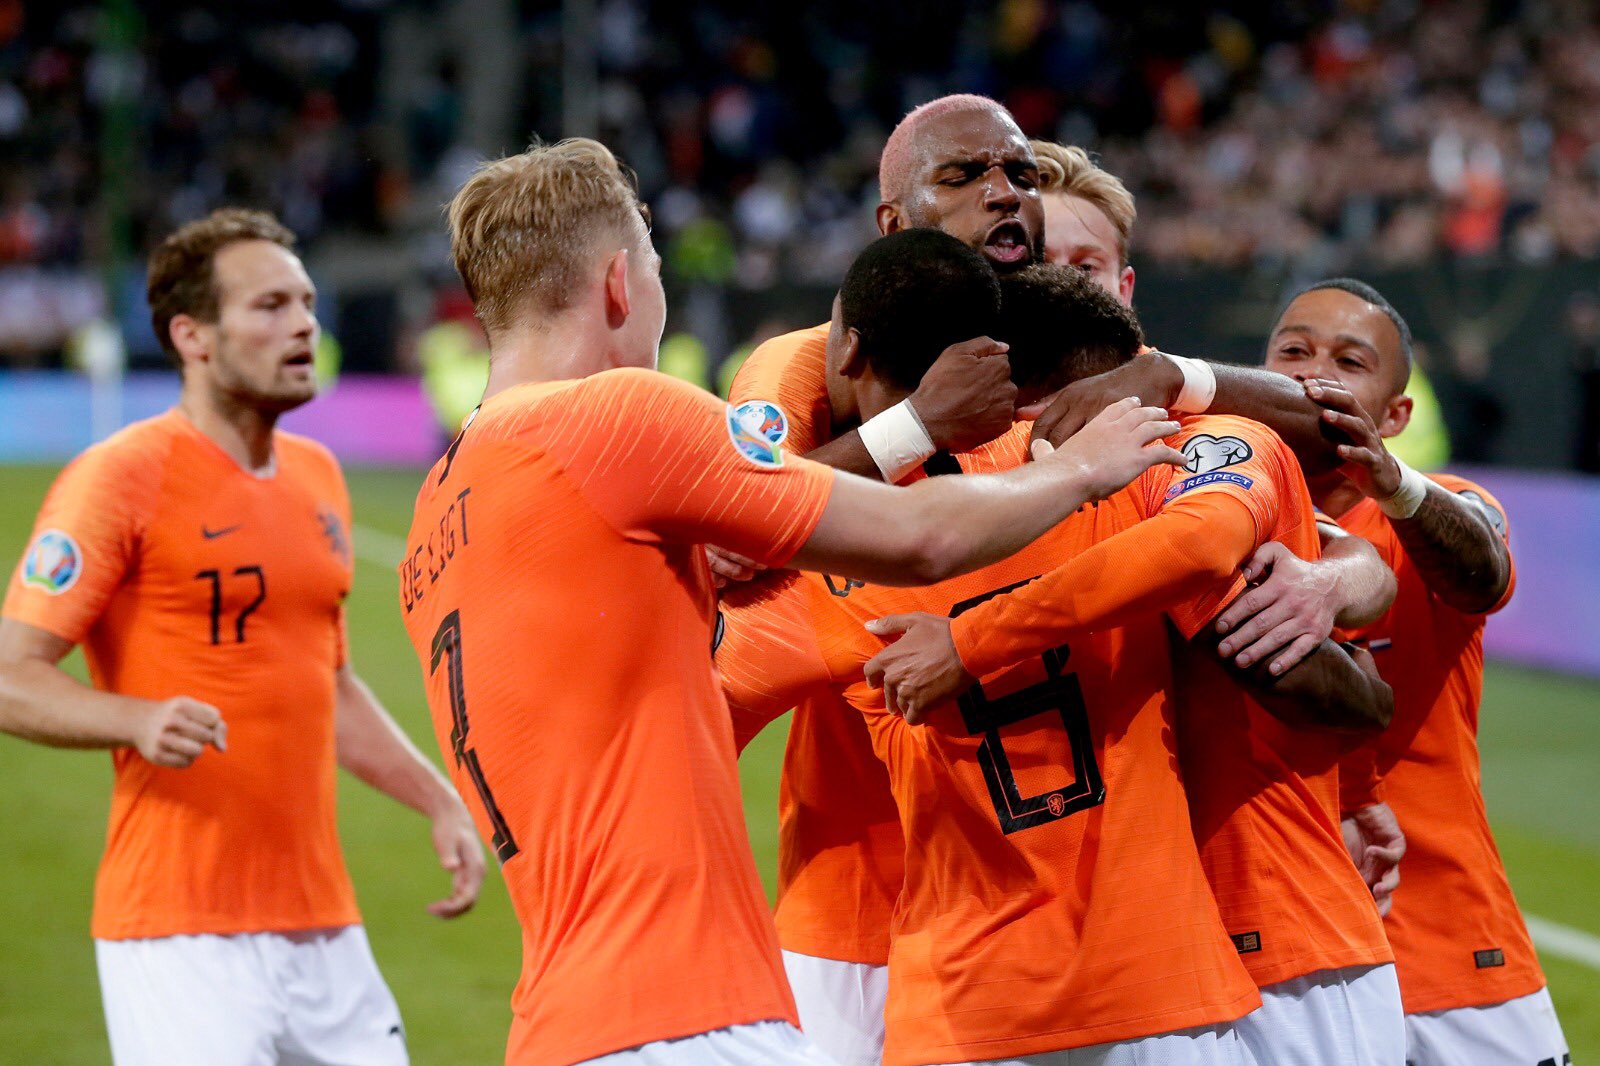 Belanda menunjukkan kualitasnya saat menghajar Estonia dengan skor 4-0. (Foto: Twitter/@OranjeOns)